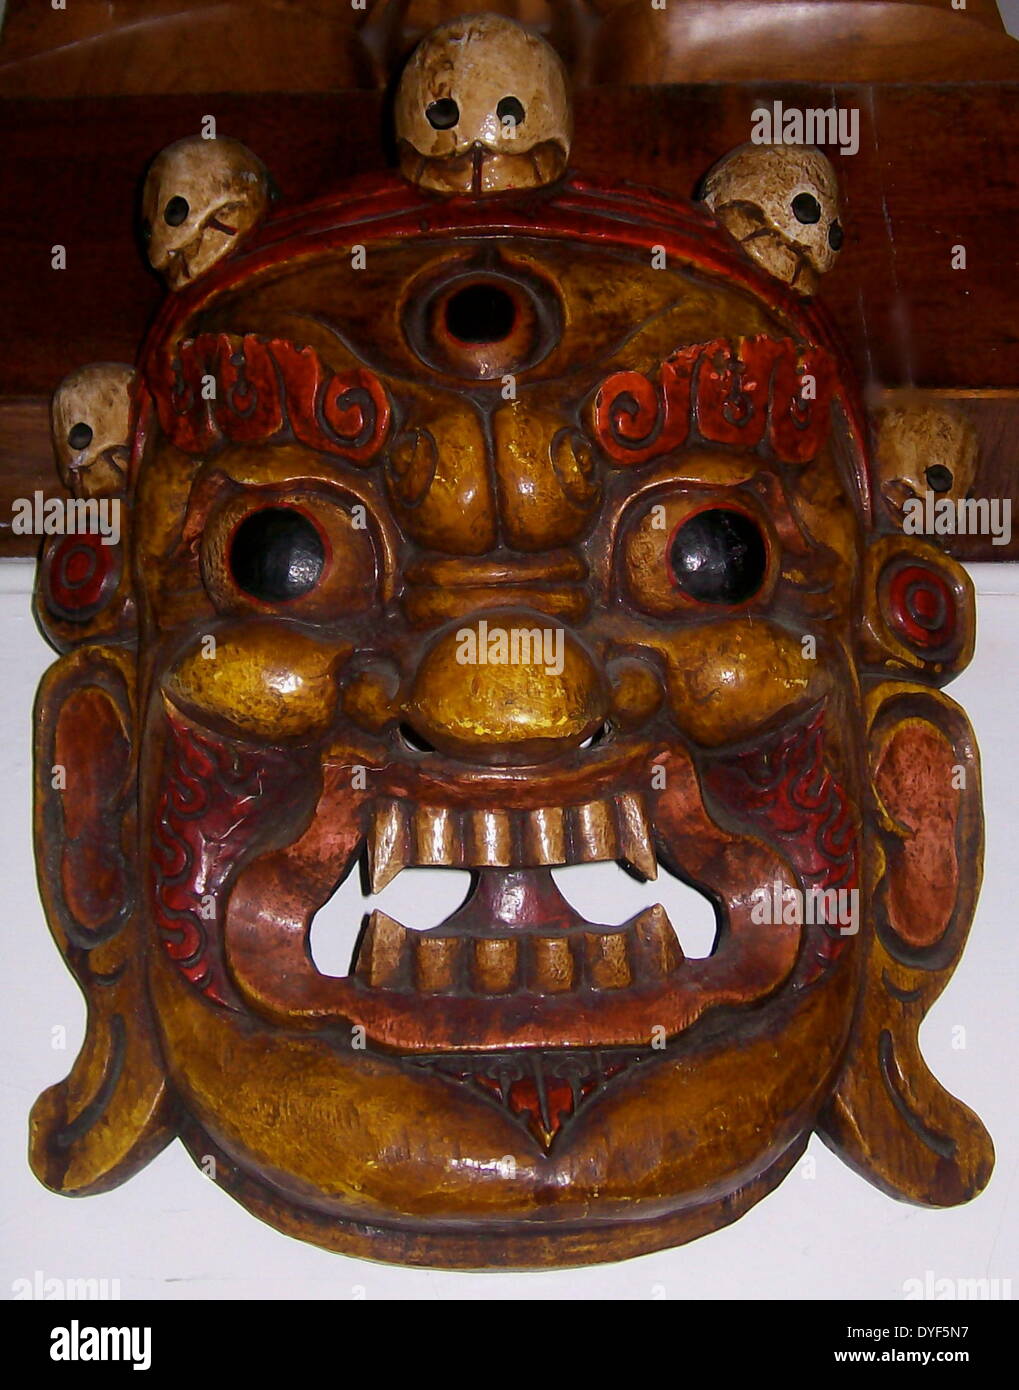 L'art tibétain : Mahakala masque, la fin de la dynastie Qing, 1800-1912, AD de Lhassa, au Tibet. Le bois peint. La tête est surmontée d'une couronne de cinq crânes repesenting les cinq sagesses. Banque D'Images